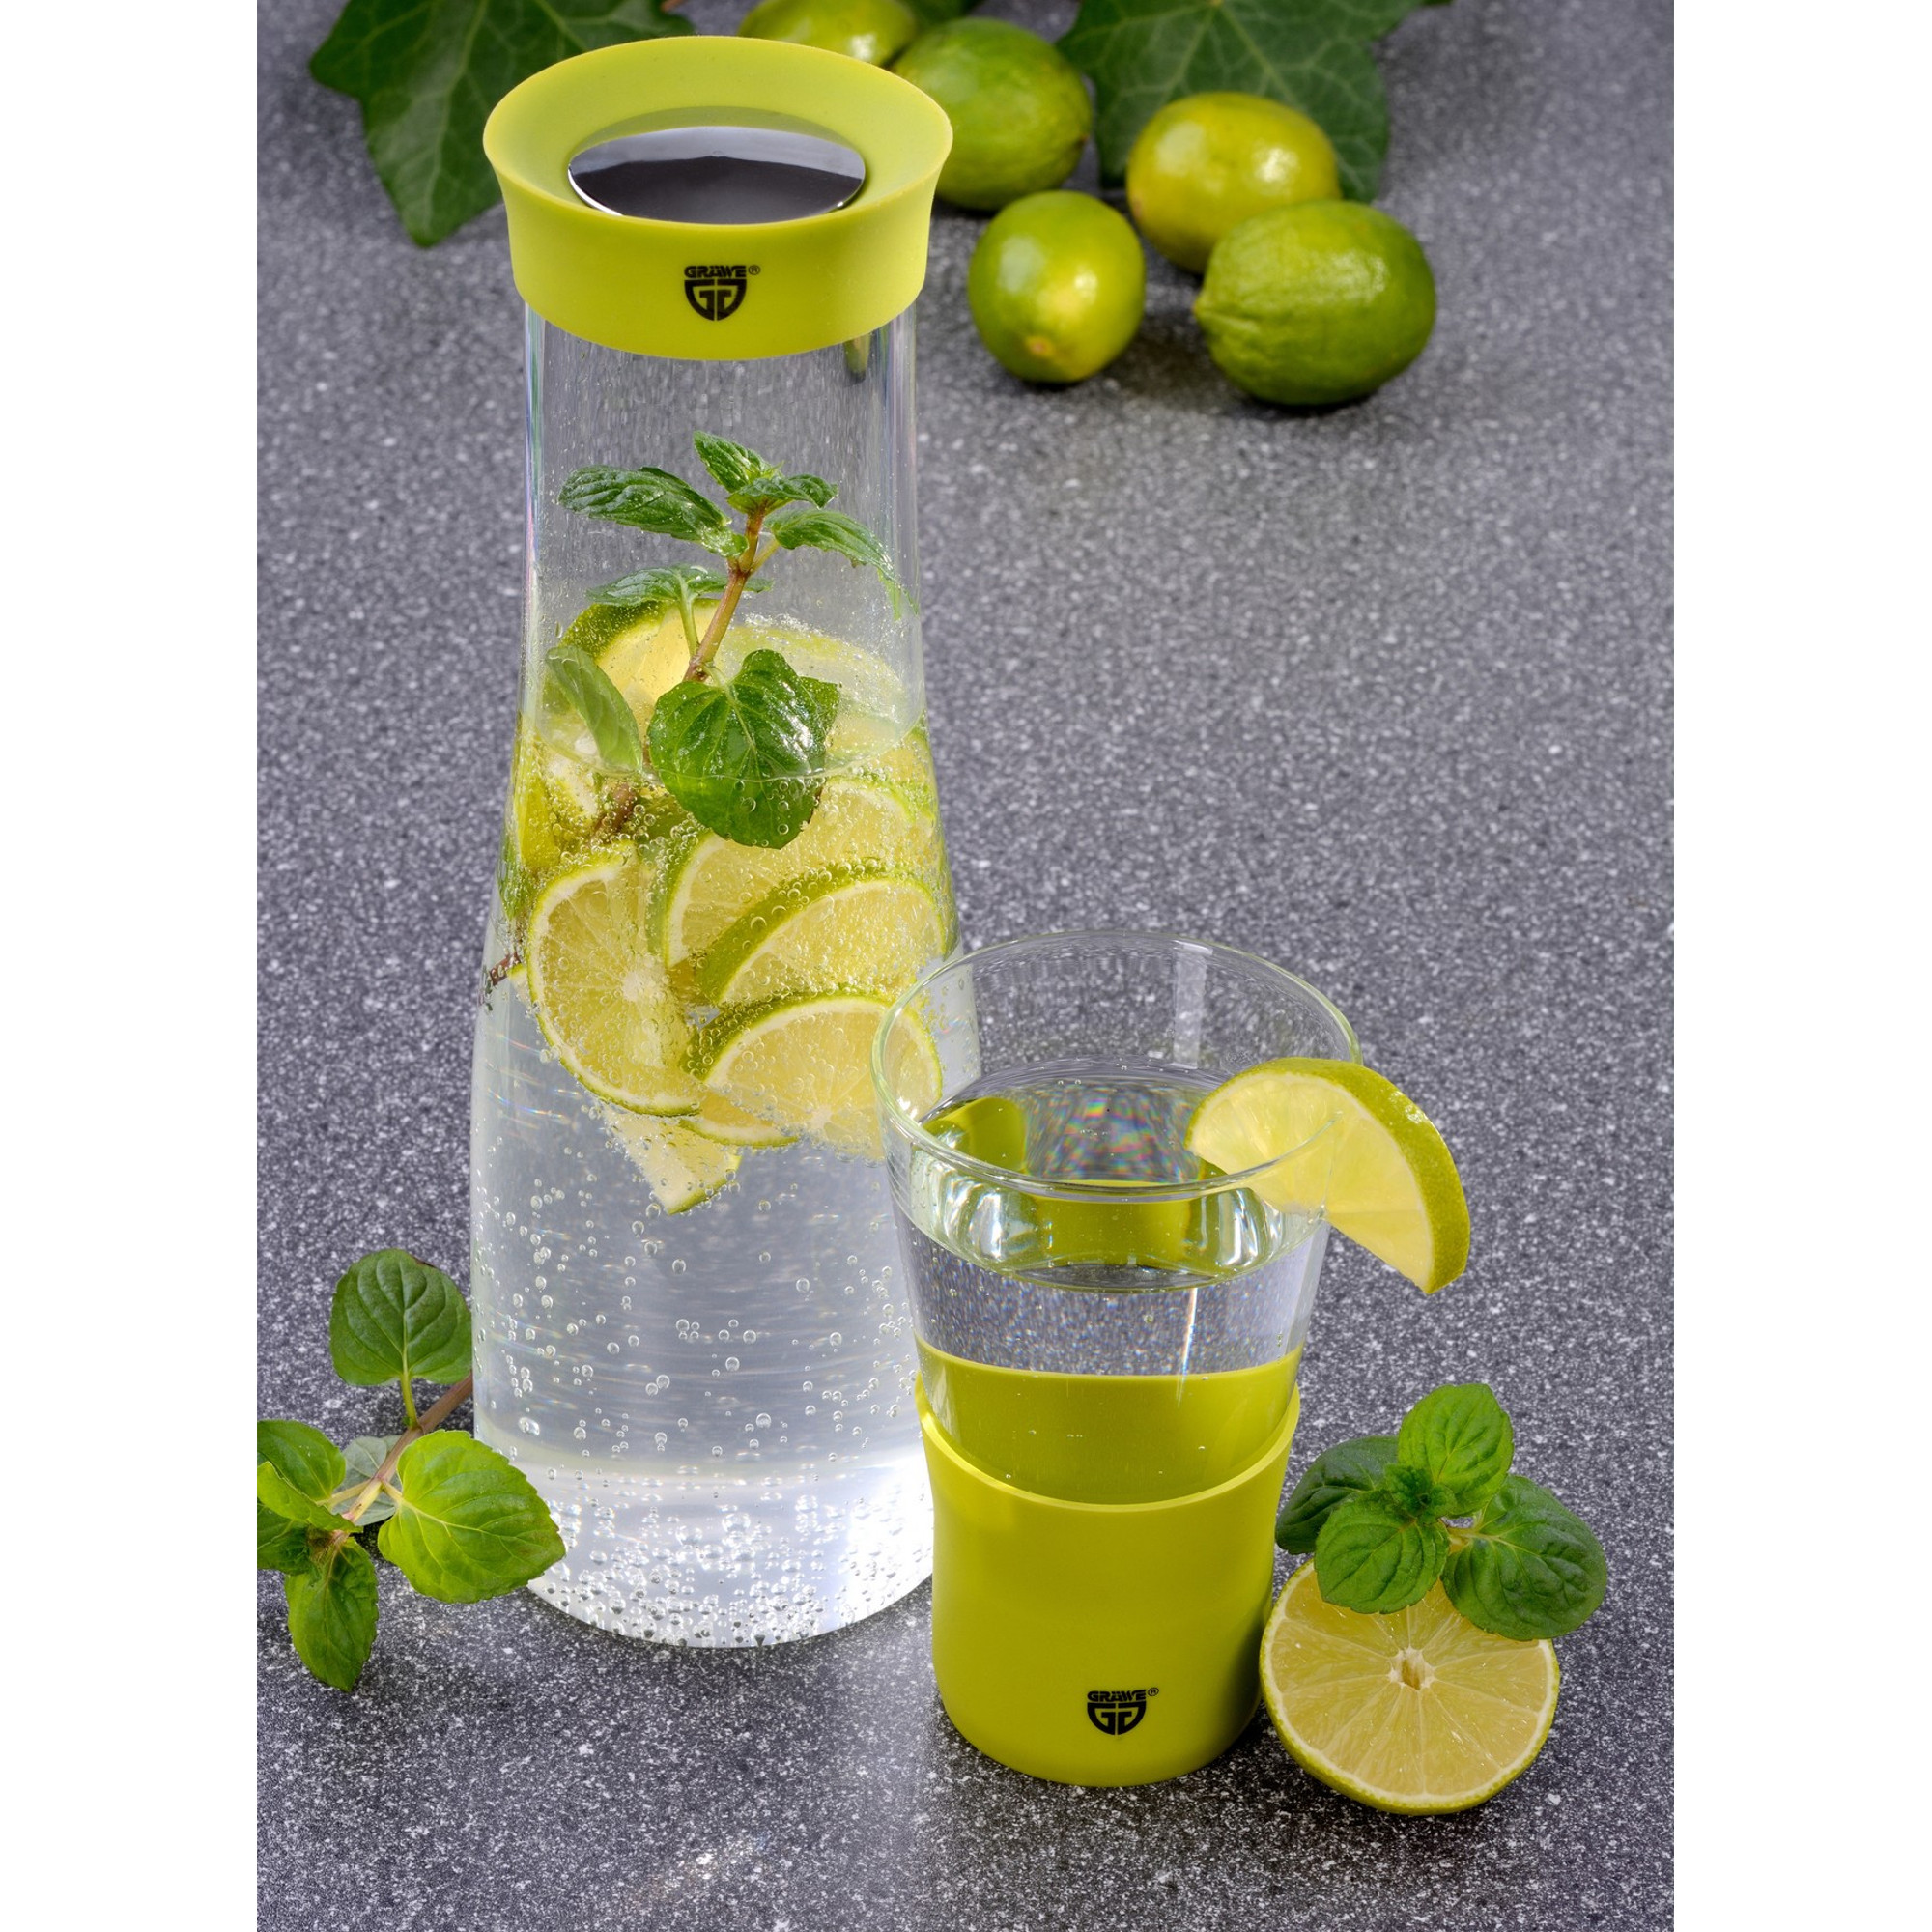 Glaskaraffe mit Deckel/Ausgießer, 1 Liter, grün